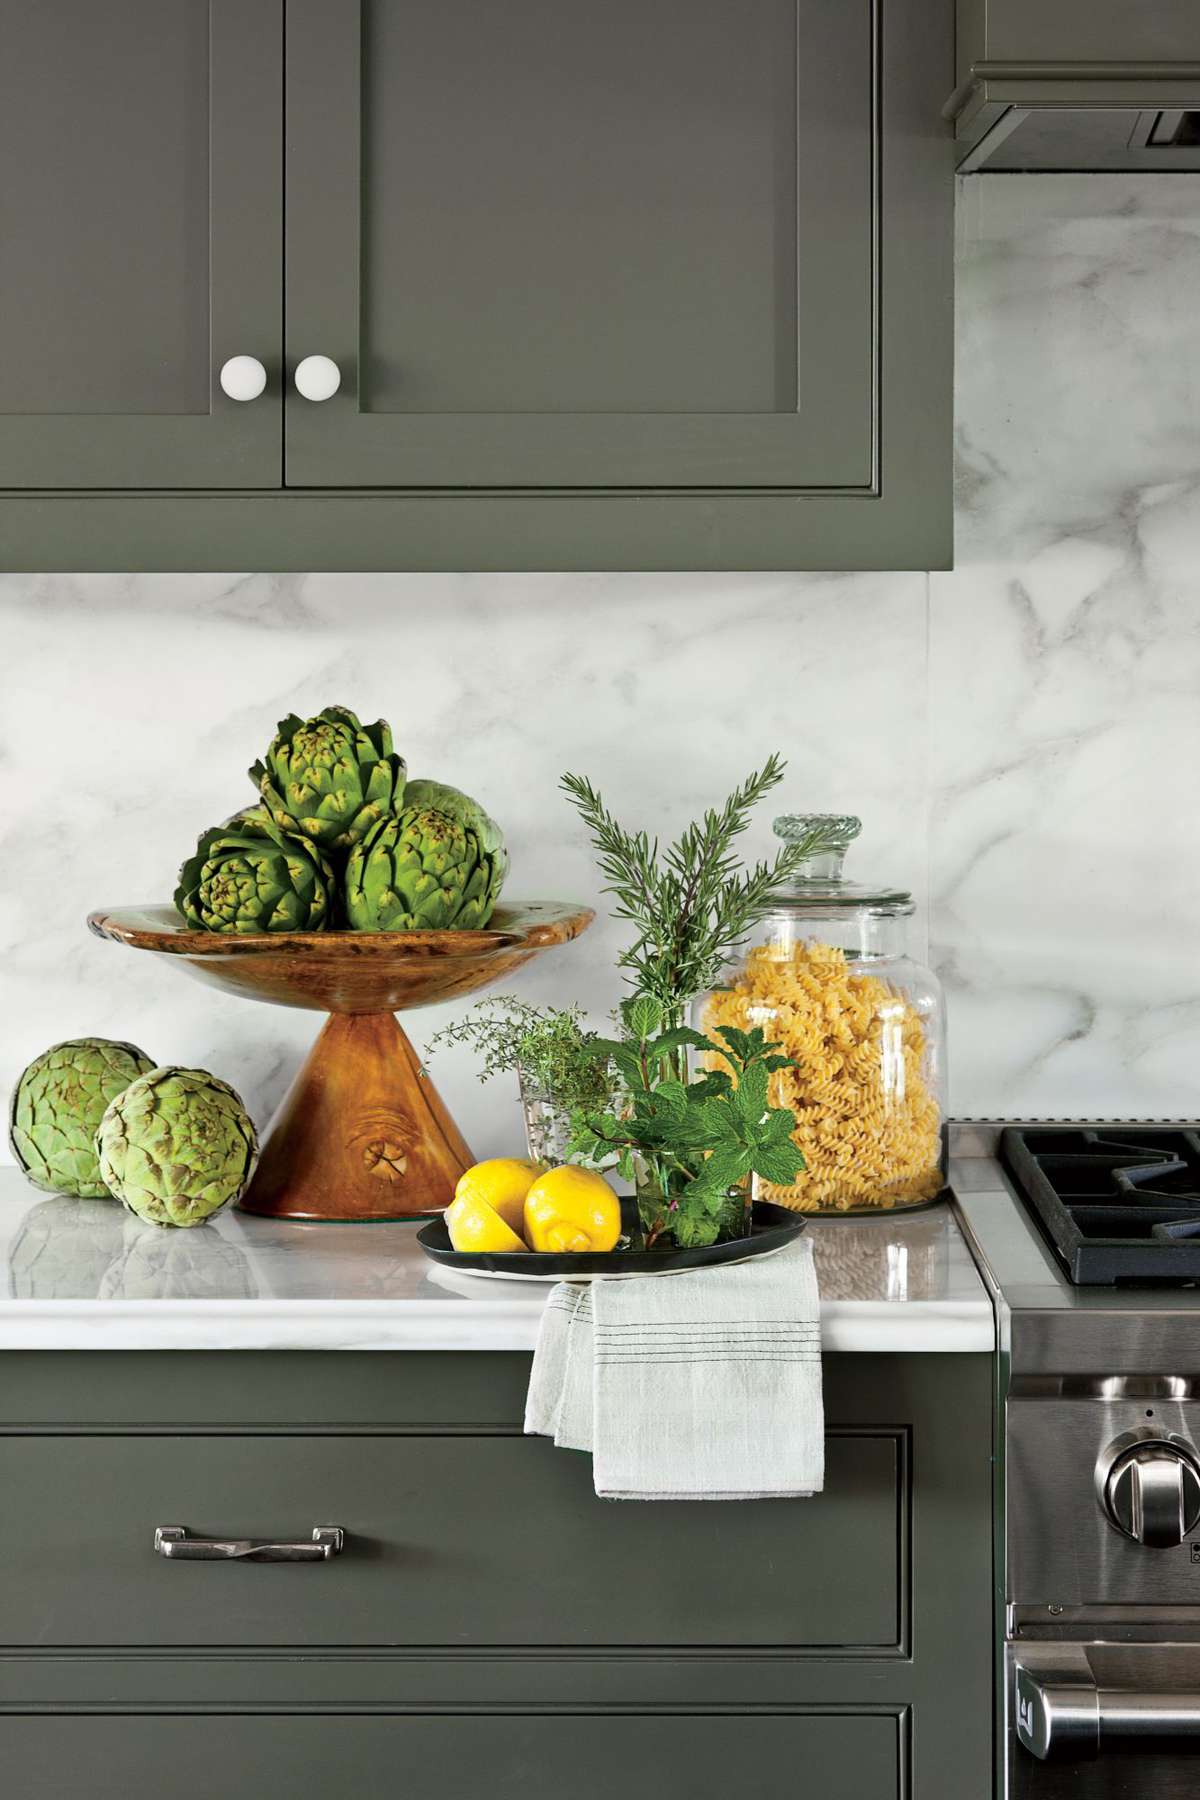 Dark Green kitchen cabinets with marble slab backsplash